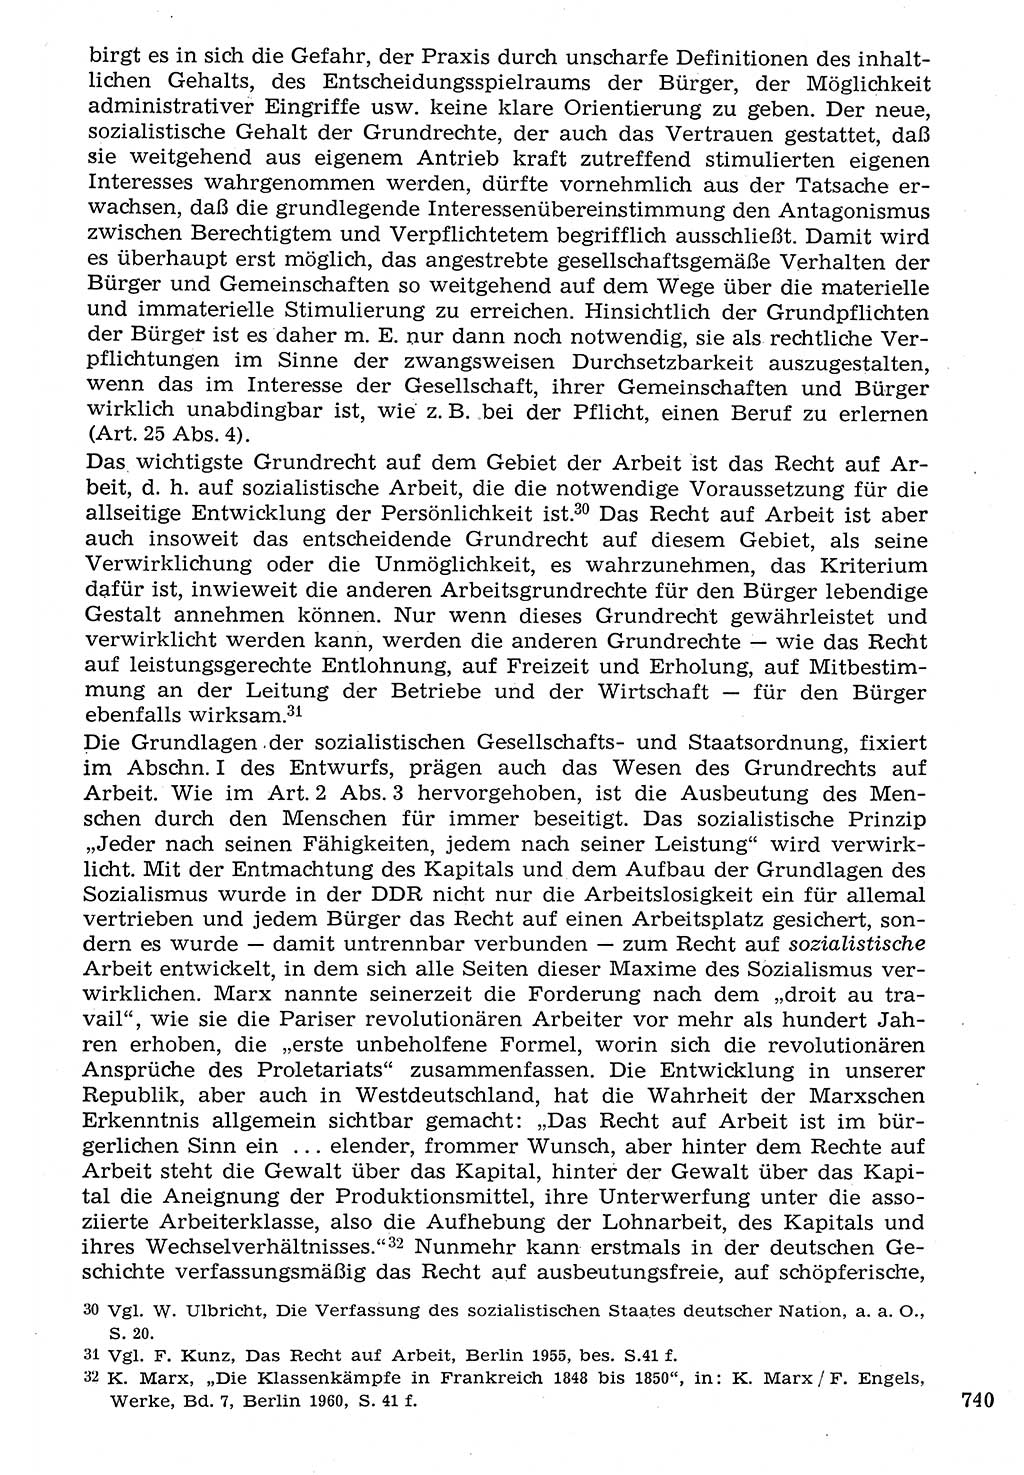 Staat und Recht (StuR), 17. Jahrgang [Deutsche Demokratische Republik (DDR)] 1968, Seite 740 (StuR DDR 1968, S. 740)